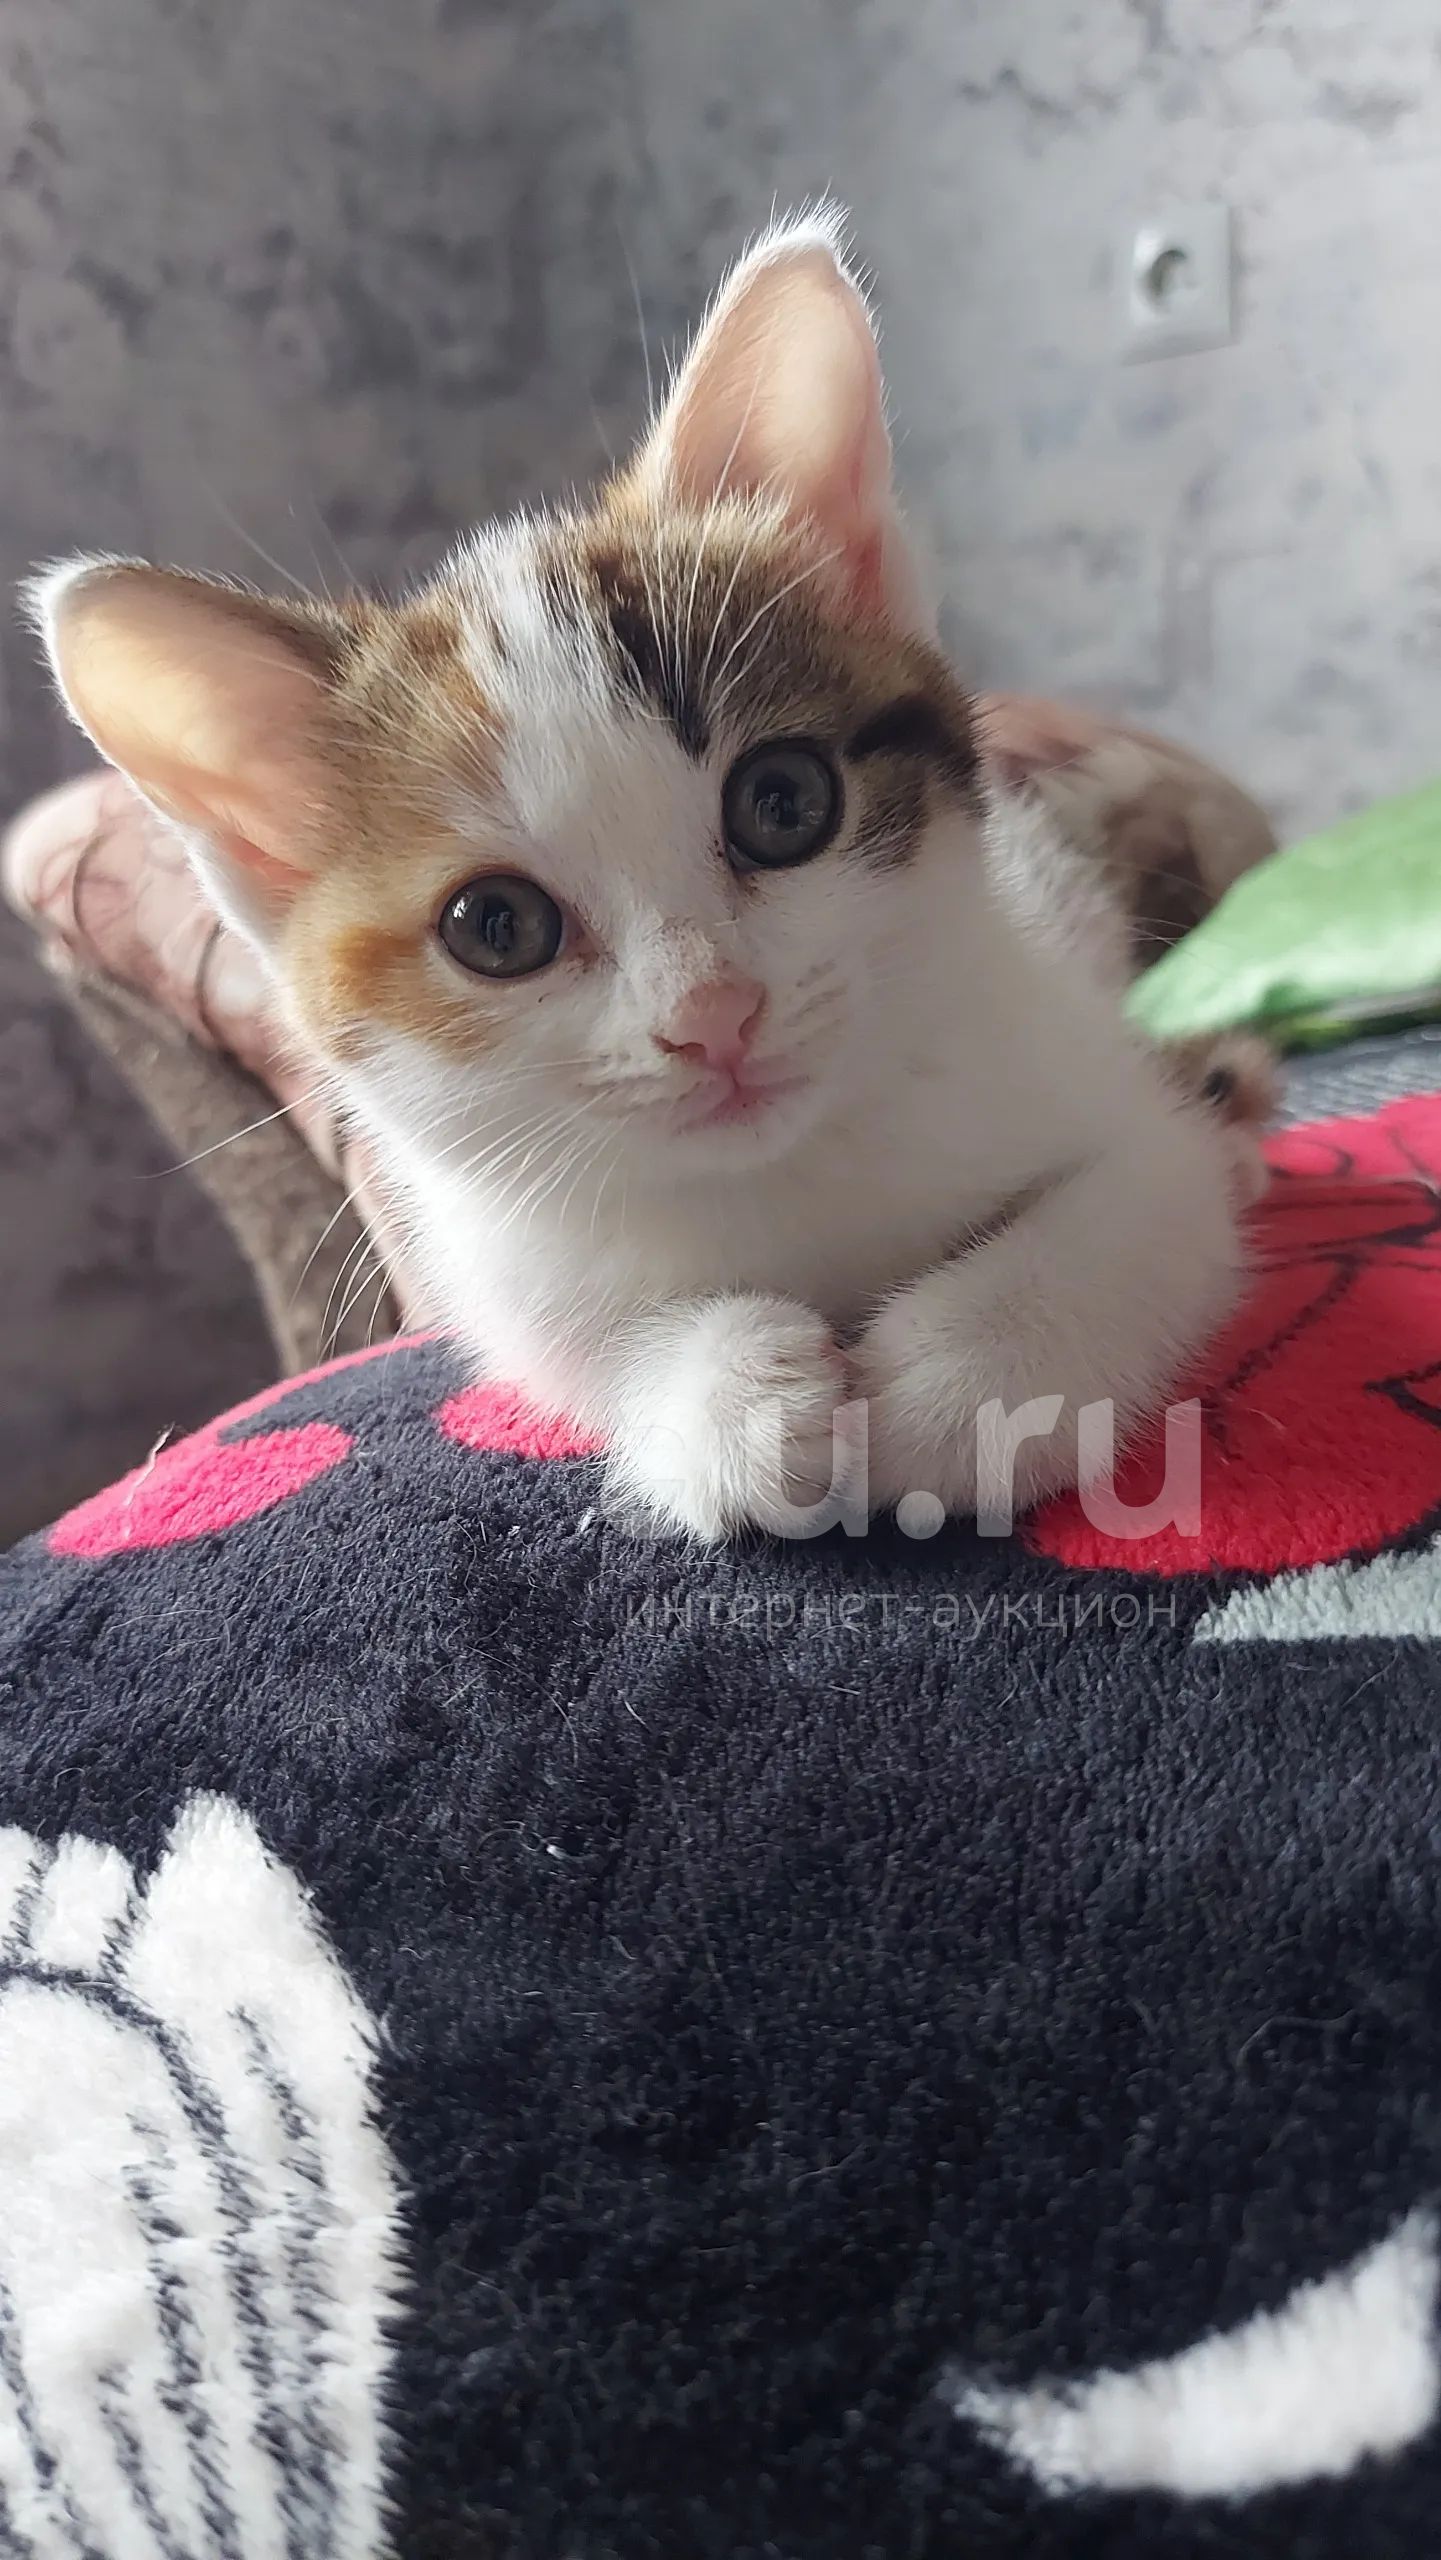 Котёнок, девочка — купить в Красноярске. Кошки, котята на интернет-аукционе  Au.ru